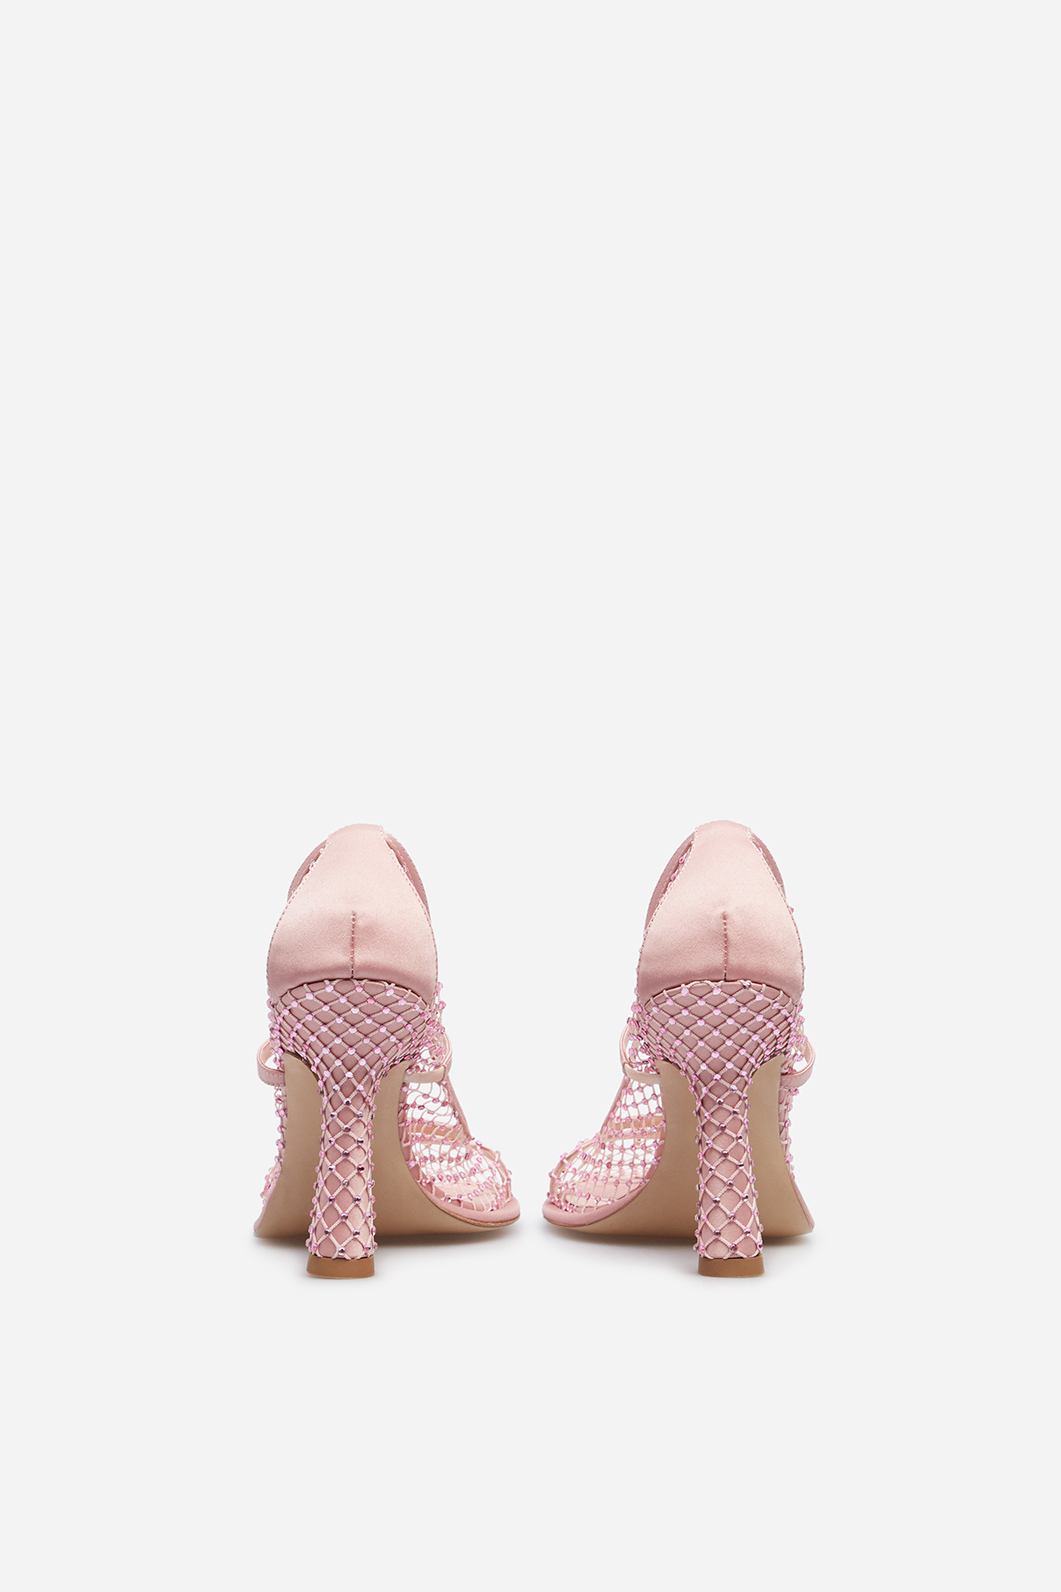 Туфлі Jerry рожеві шкіряні з білими кристалами Swarovski